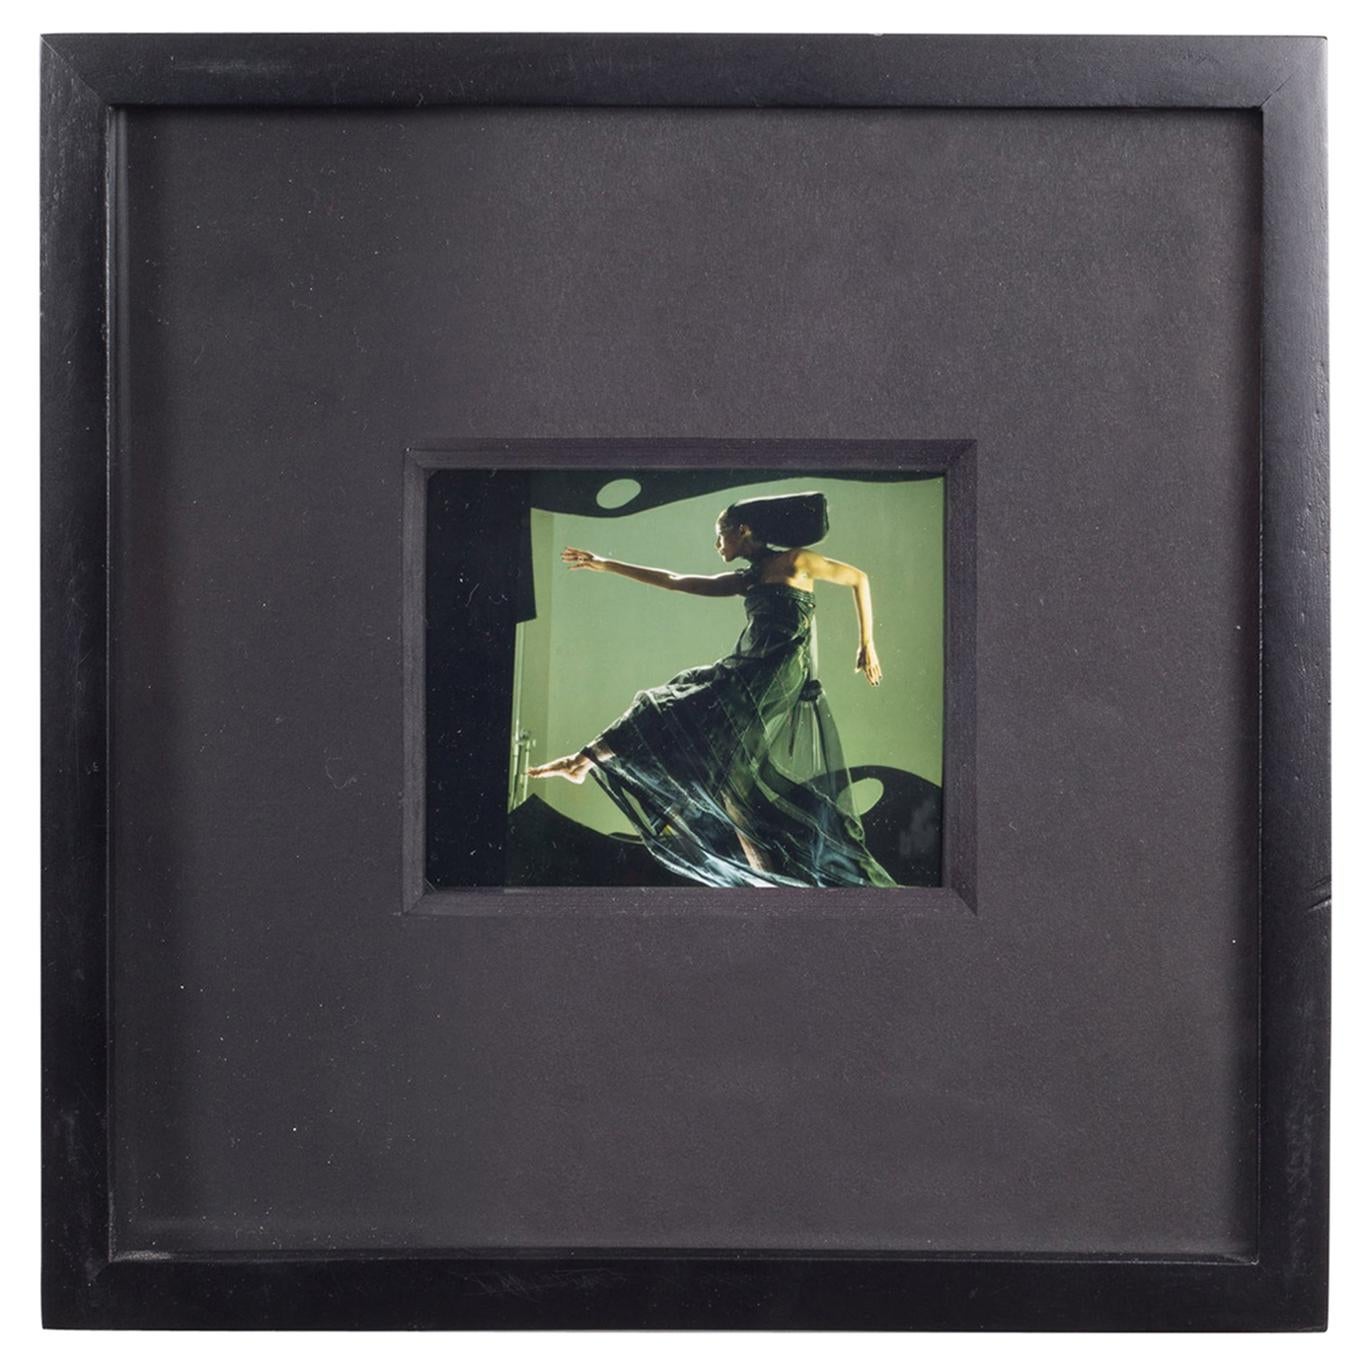 Polaroid Test Image #42 by Denise Tarantino for Dah Len Studios